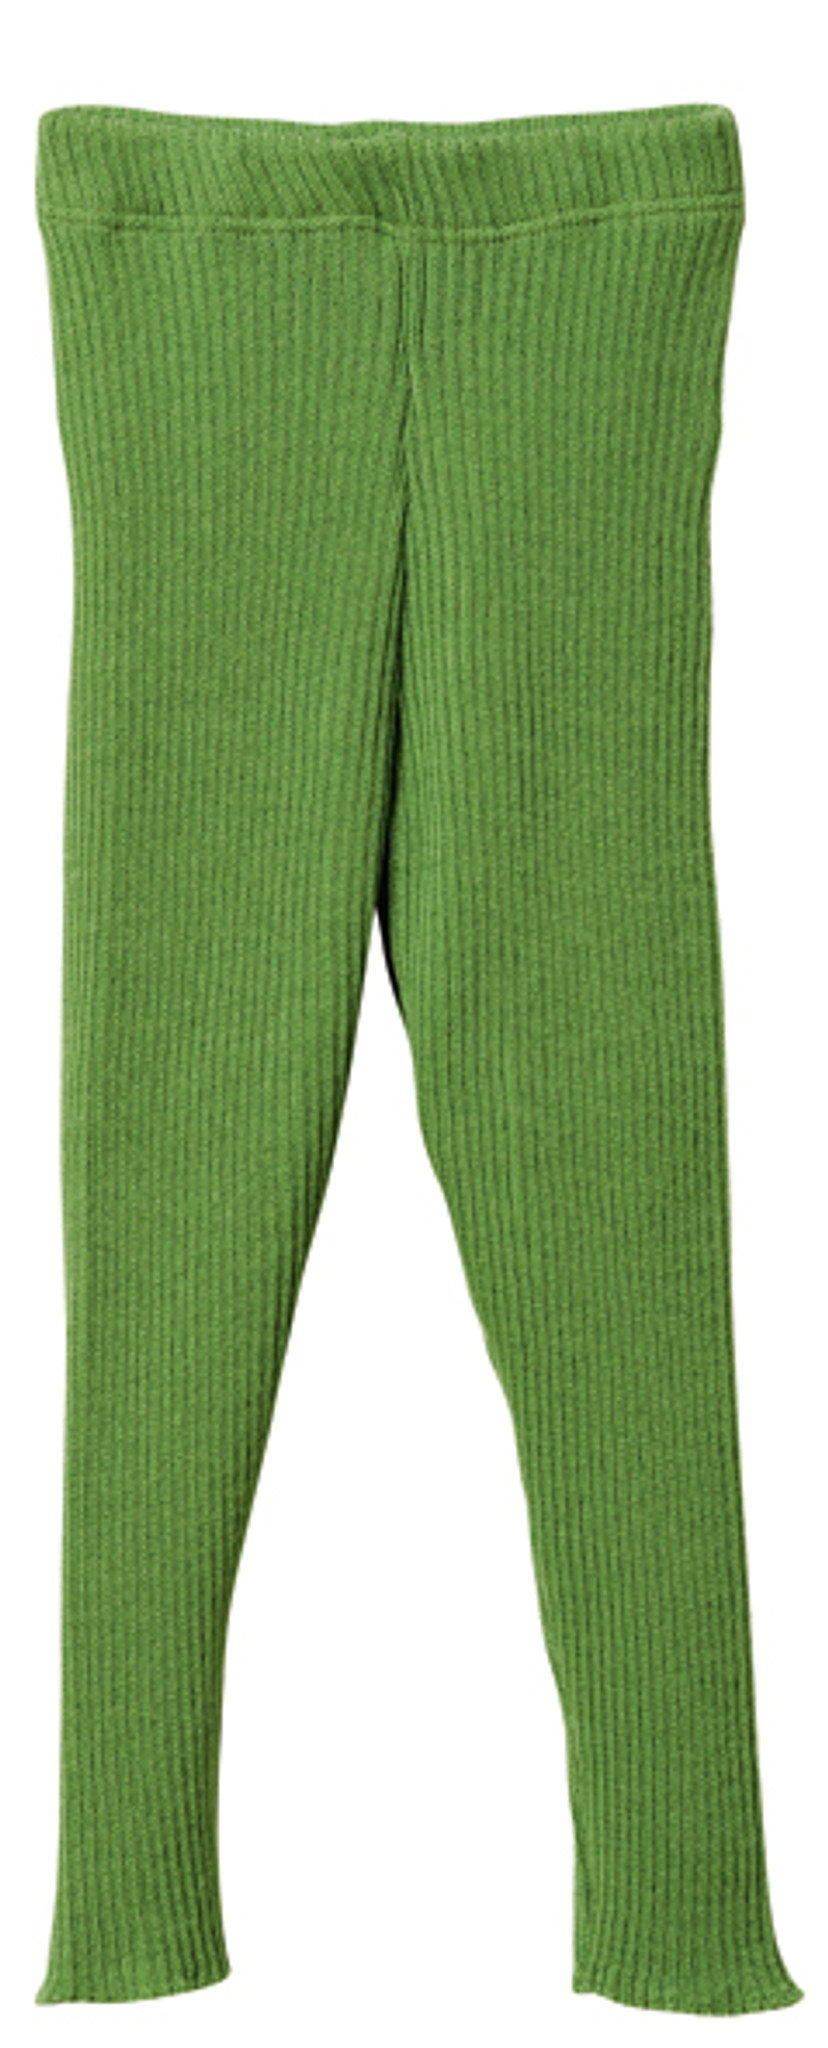 2-pack Rib-knit Leggings - Dark green/light green - Kids